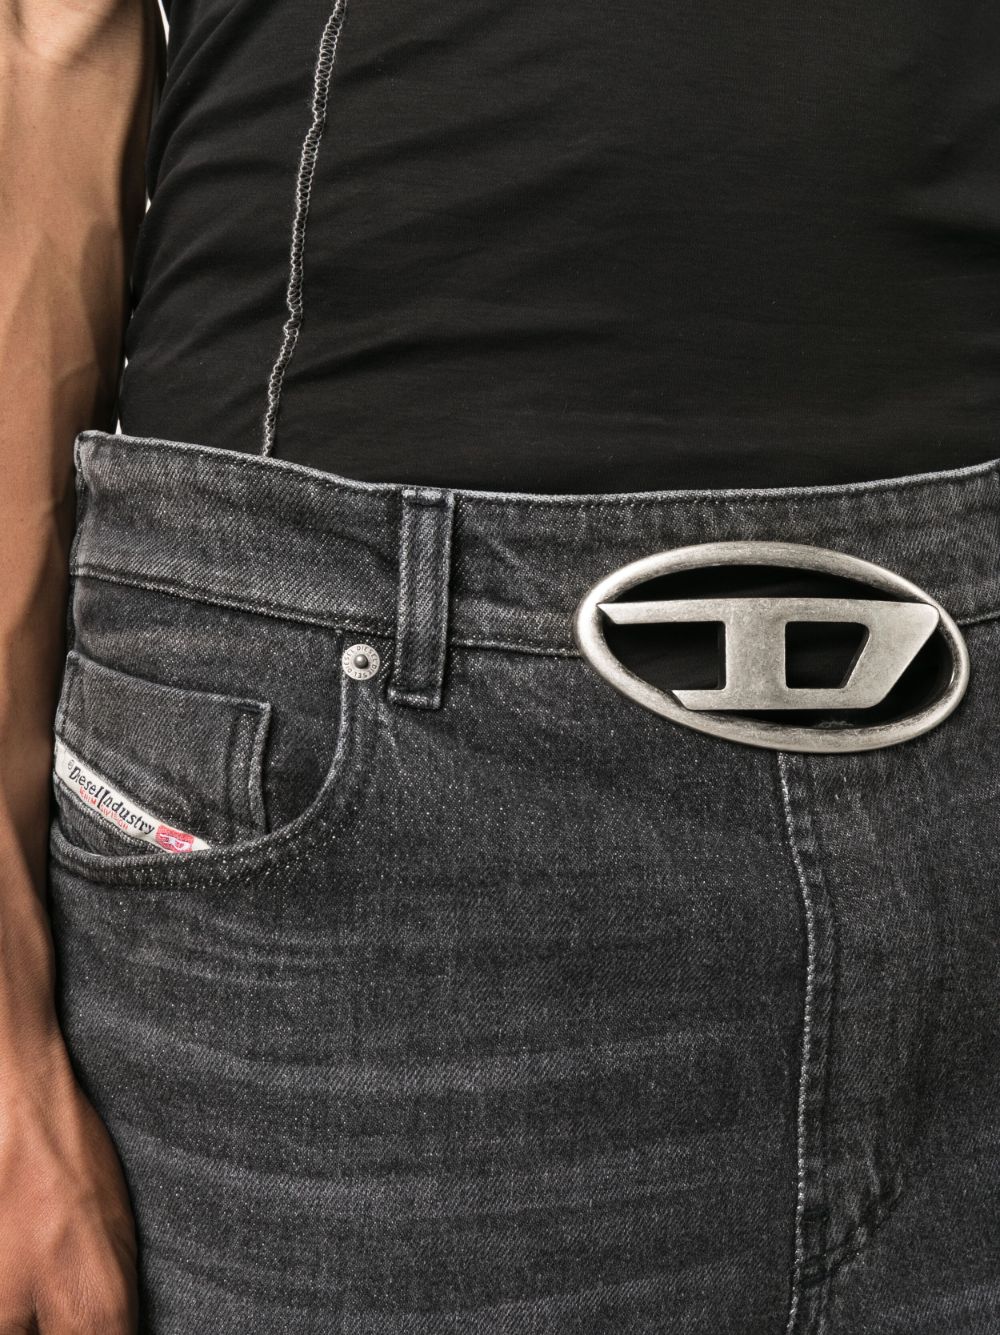 DIESEL logo-buckle Wide Belt - Silver